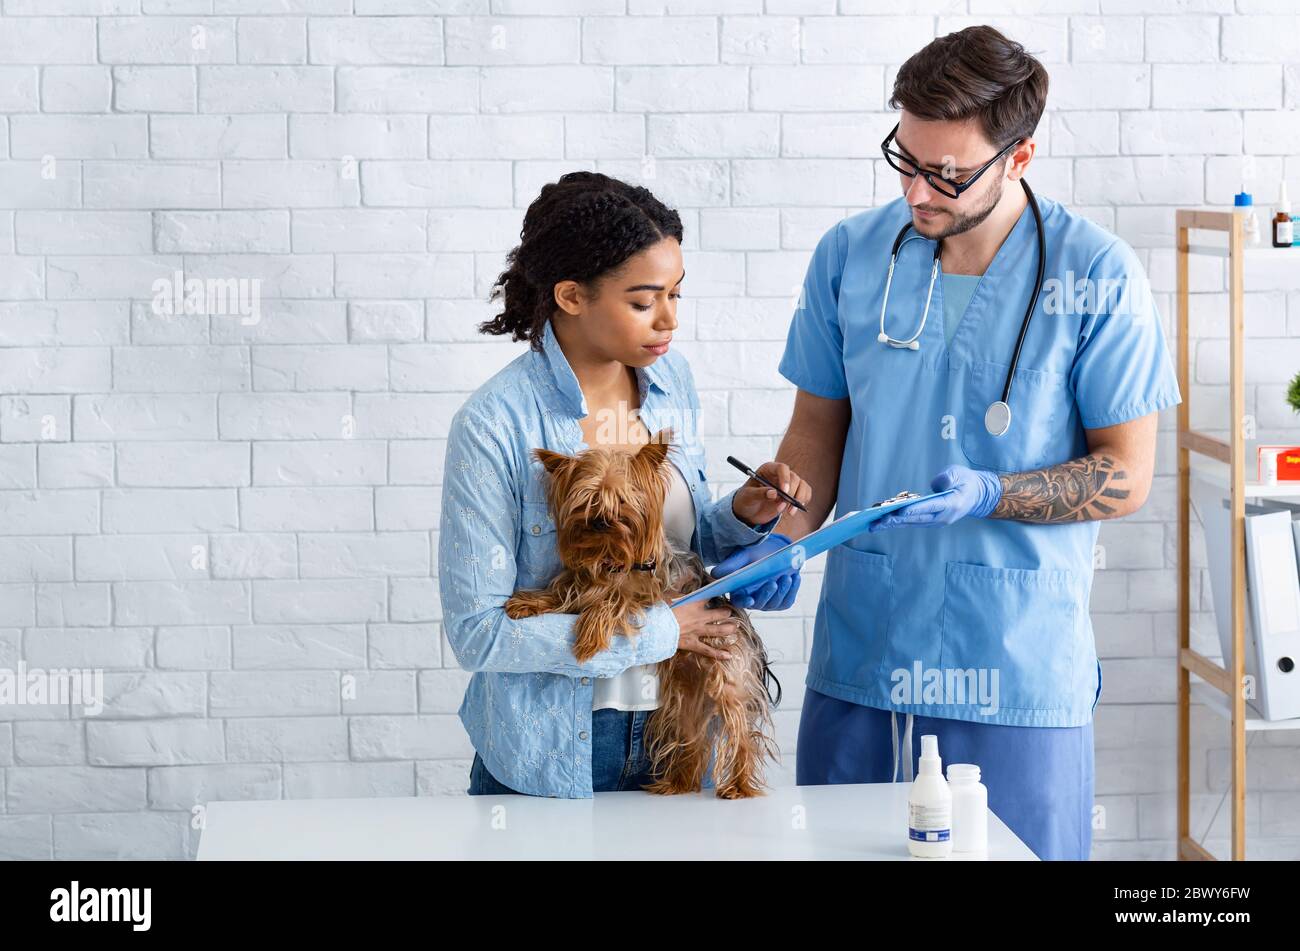 Proprietario del cane in visita al medico veterinario presso l'ospedale animale, spazio vuoto Foto Stock